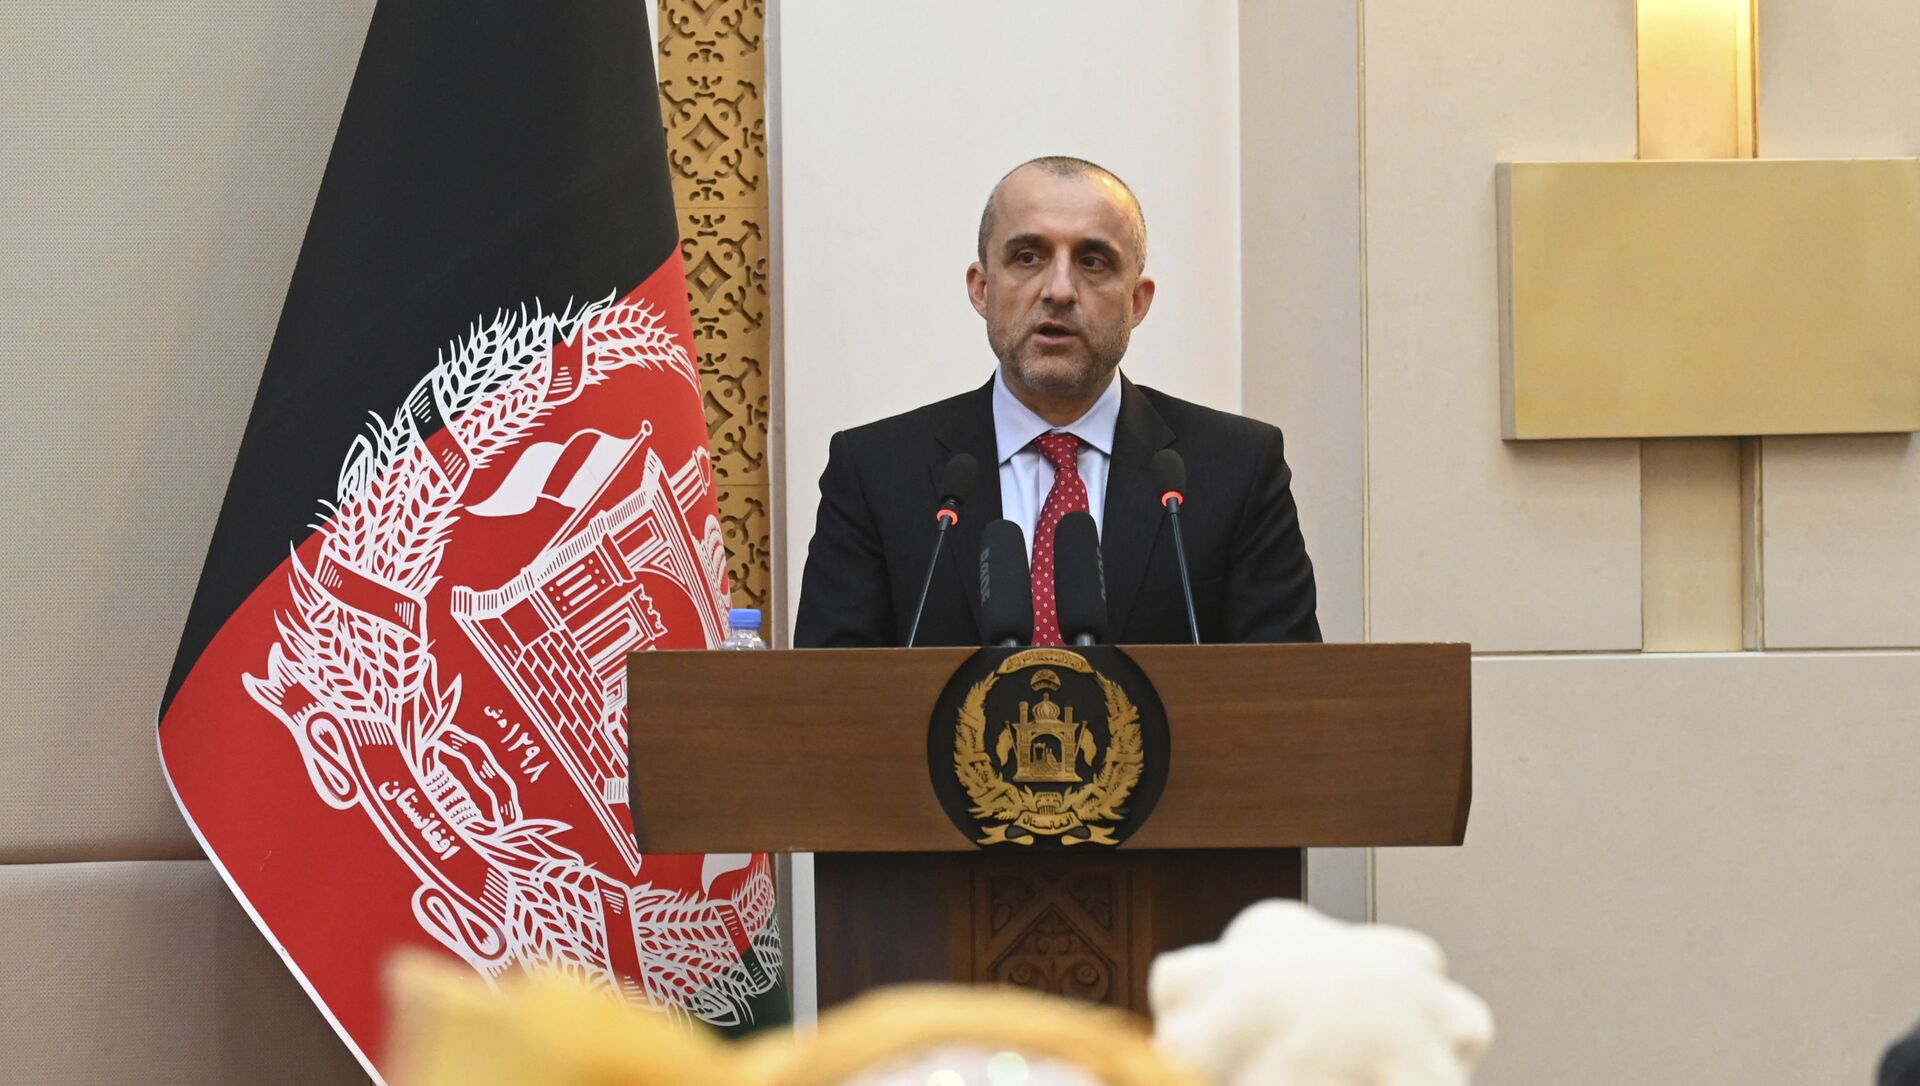 Cựu Phó Tổng thống Afghanistan Amrullah Saleh tại một sự kiện tại Phủ Tổng thống Afghanistan ở Kabul - Sputnik Việt Nam, 1920, 03.09.2021